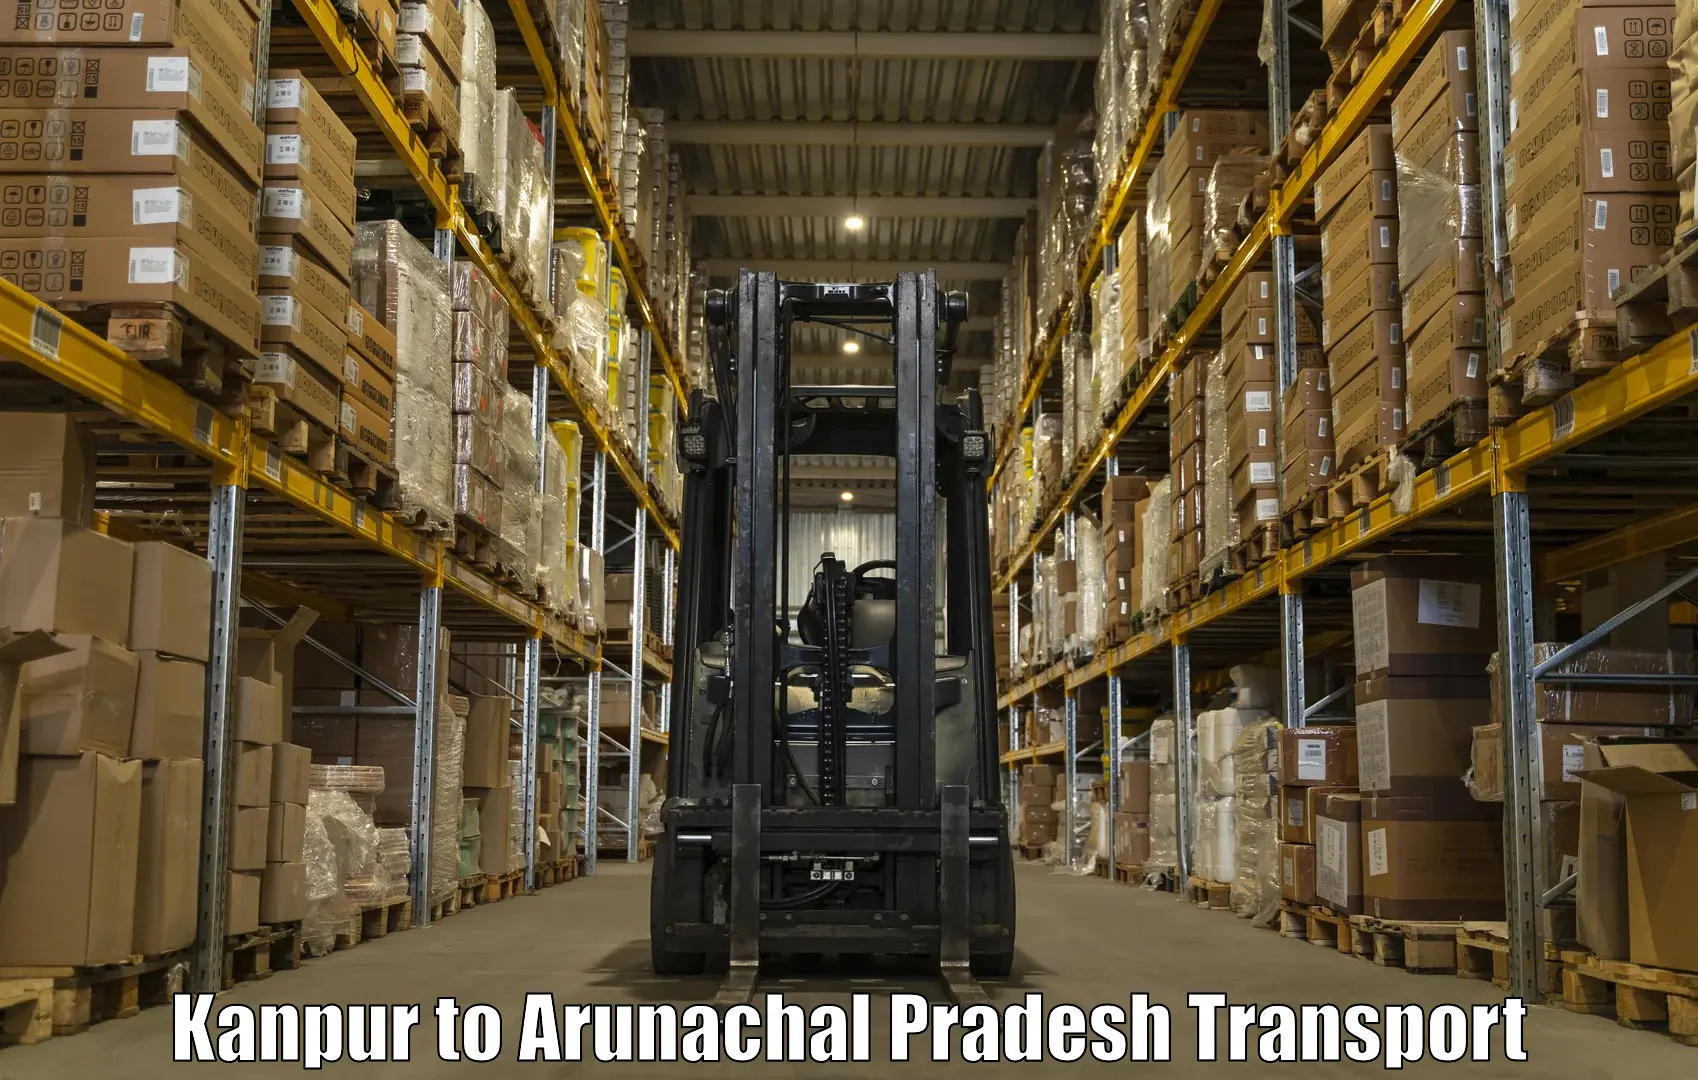 Furniture transport service Kanpur to Nirjuli